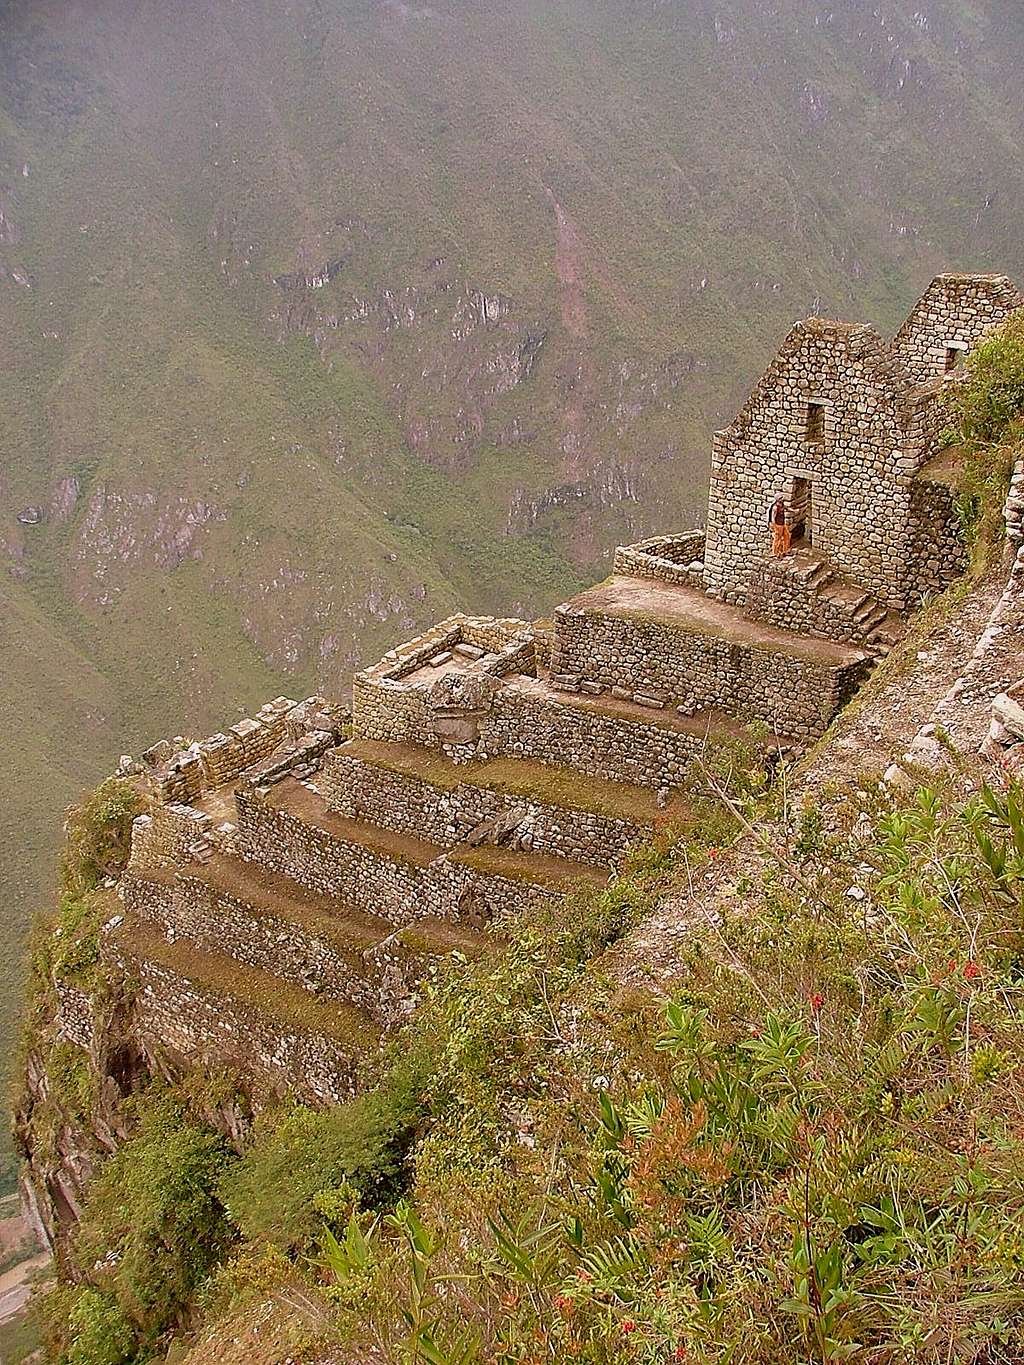 Machu Picchu, Peru.